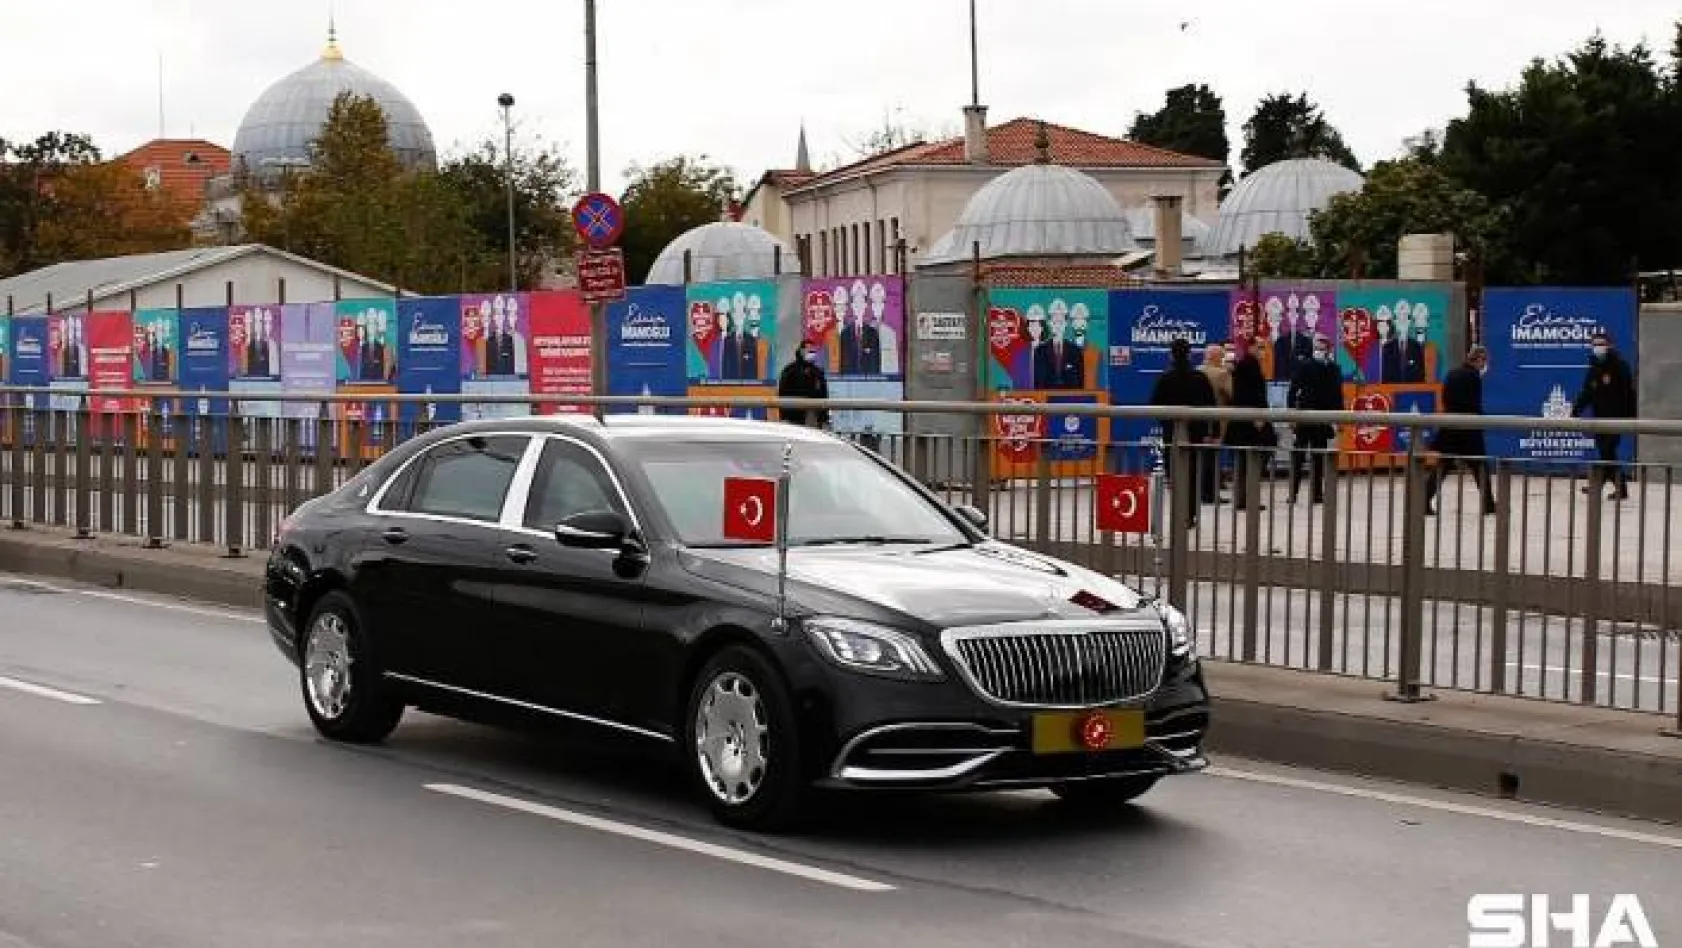 Cumhurbaşkanı Erdoğan, yazar Ahmet Kekeç'in mezarını ziyaret etti